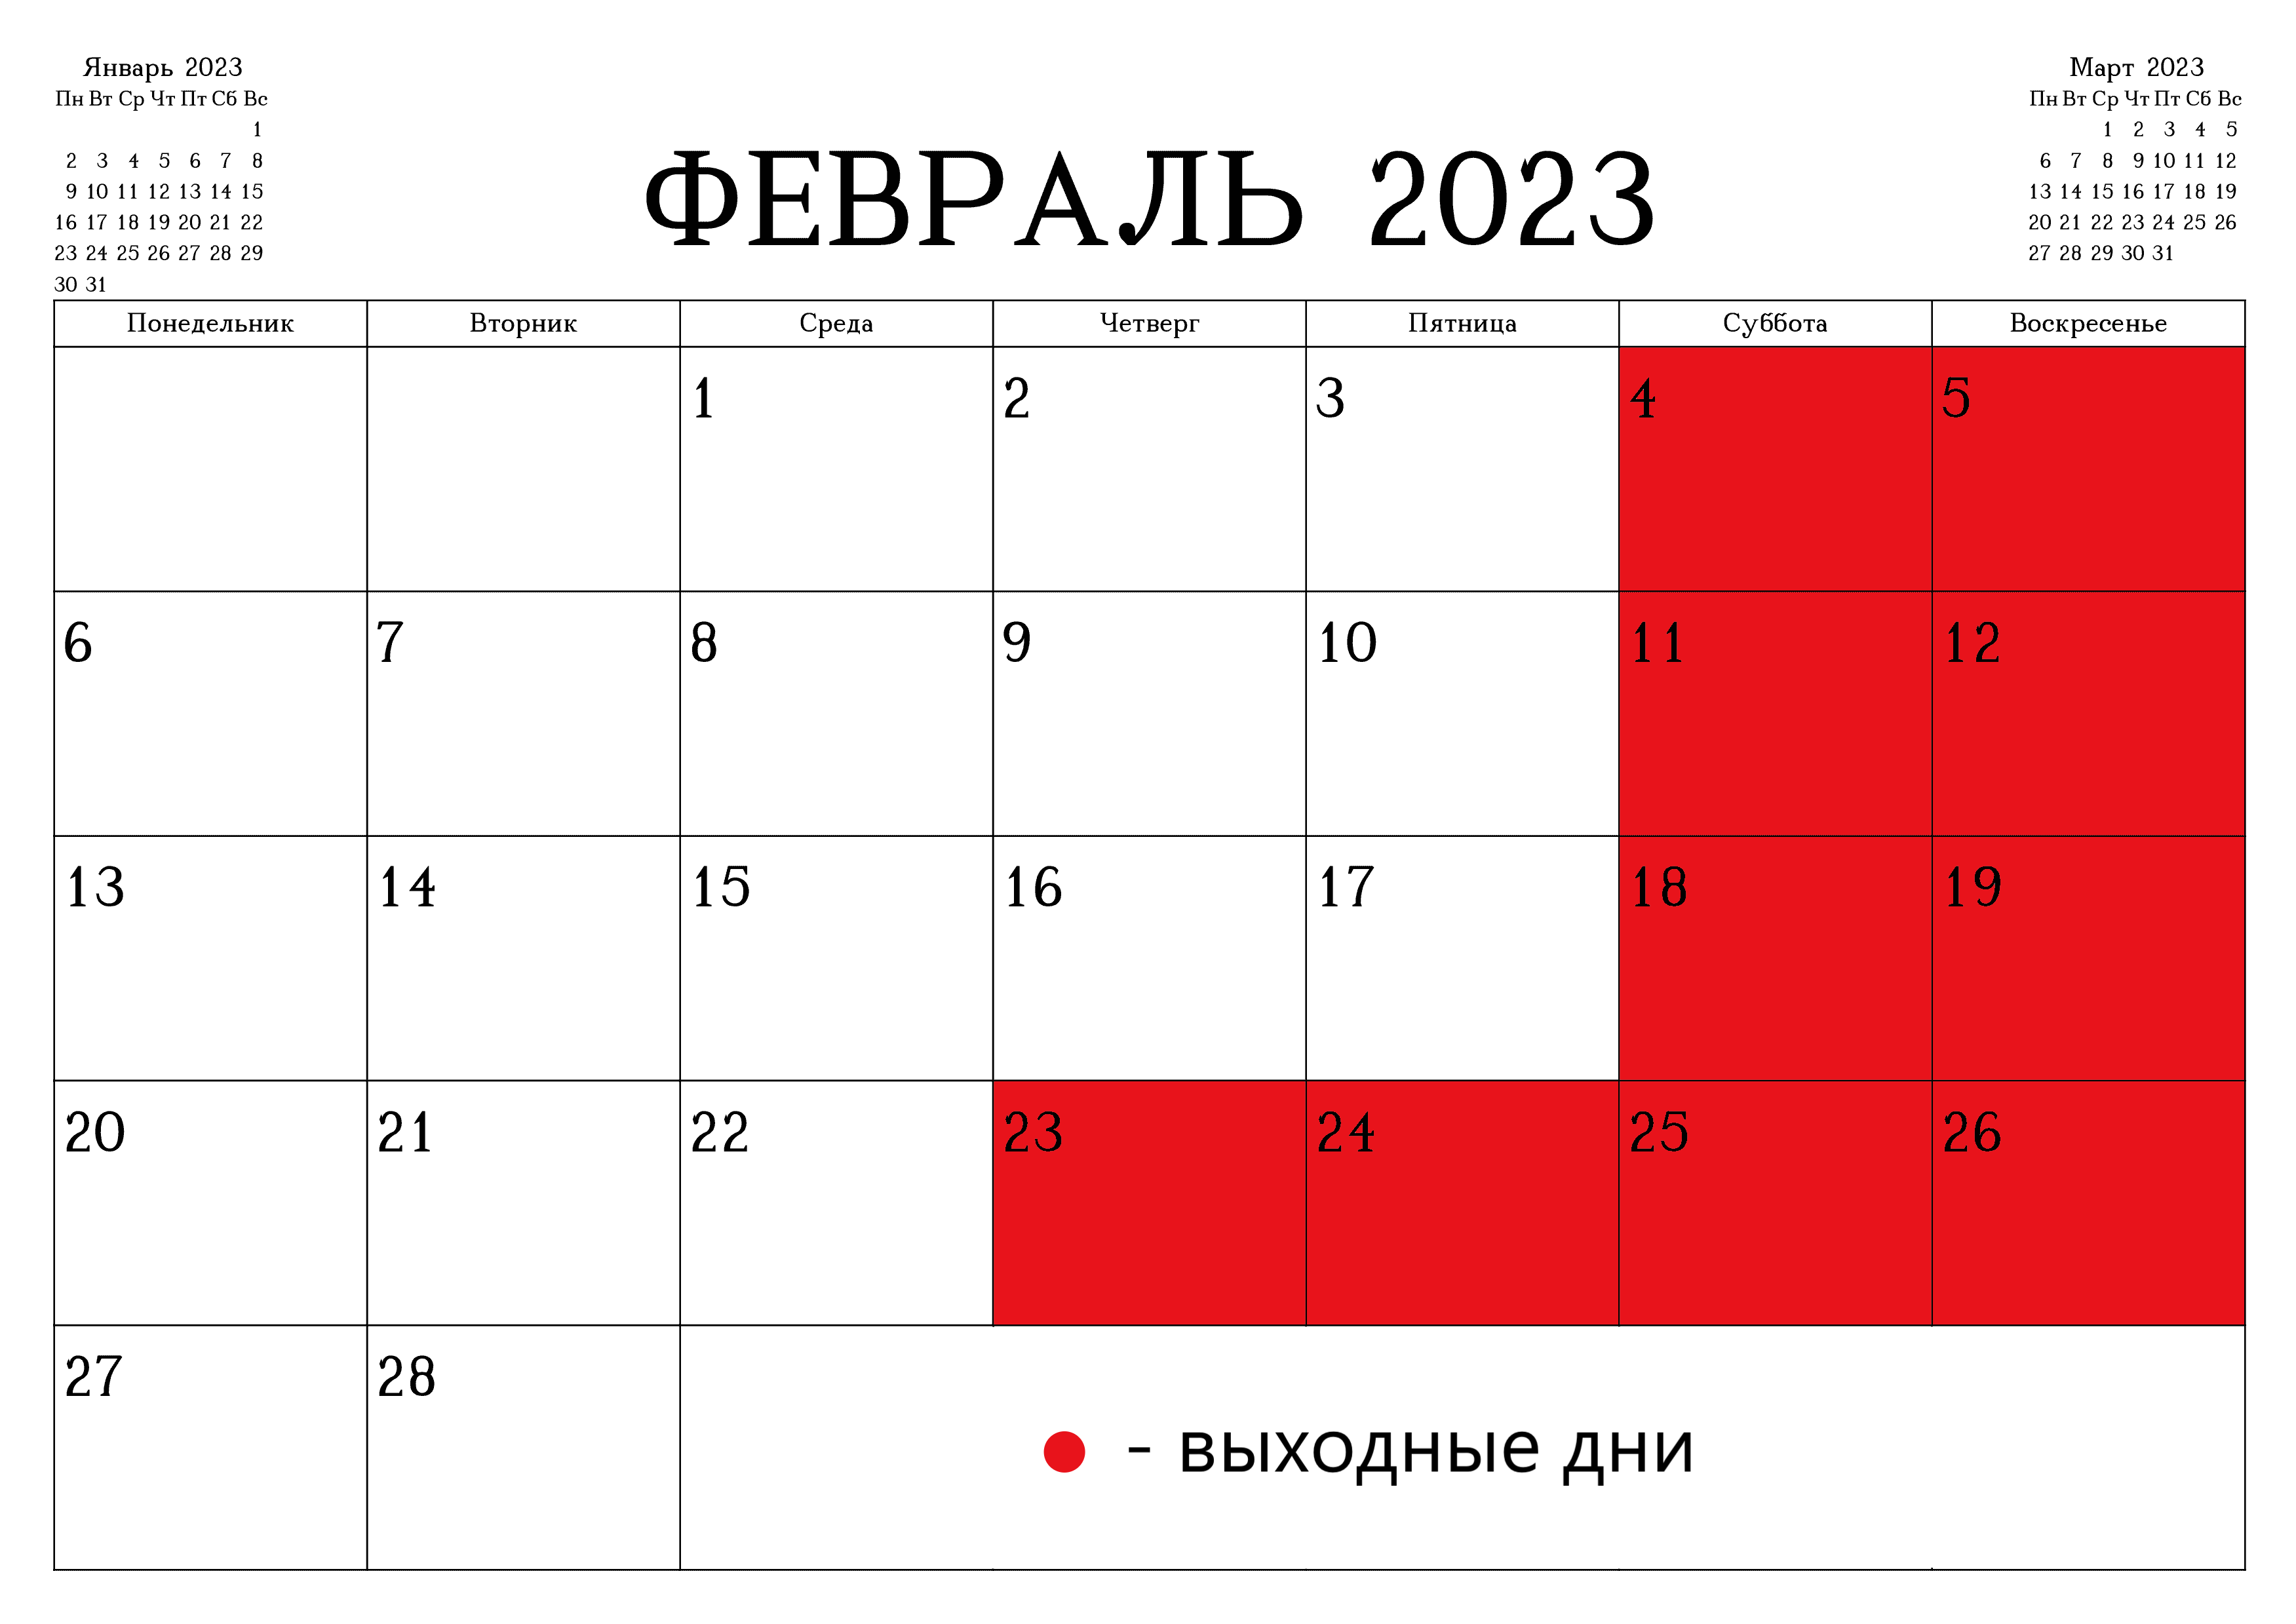 Декабрь 30 выходной. Календарь февраль. Выходные в феврале 2023 года. Календарь на февраль 2023 года. DS[jlyst d atdhfkz 2023.